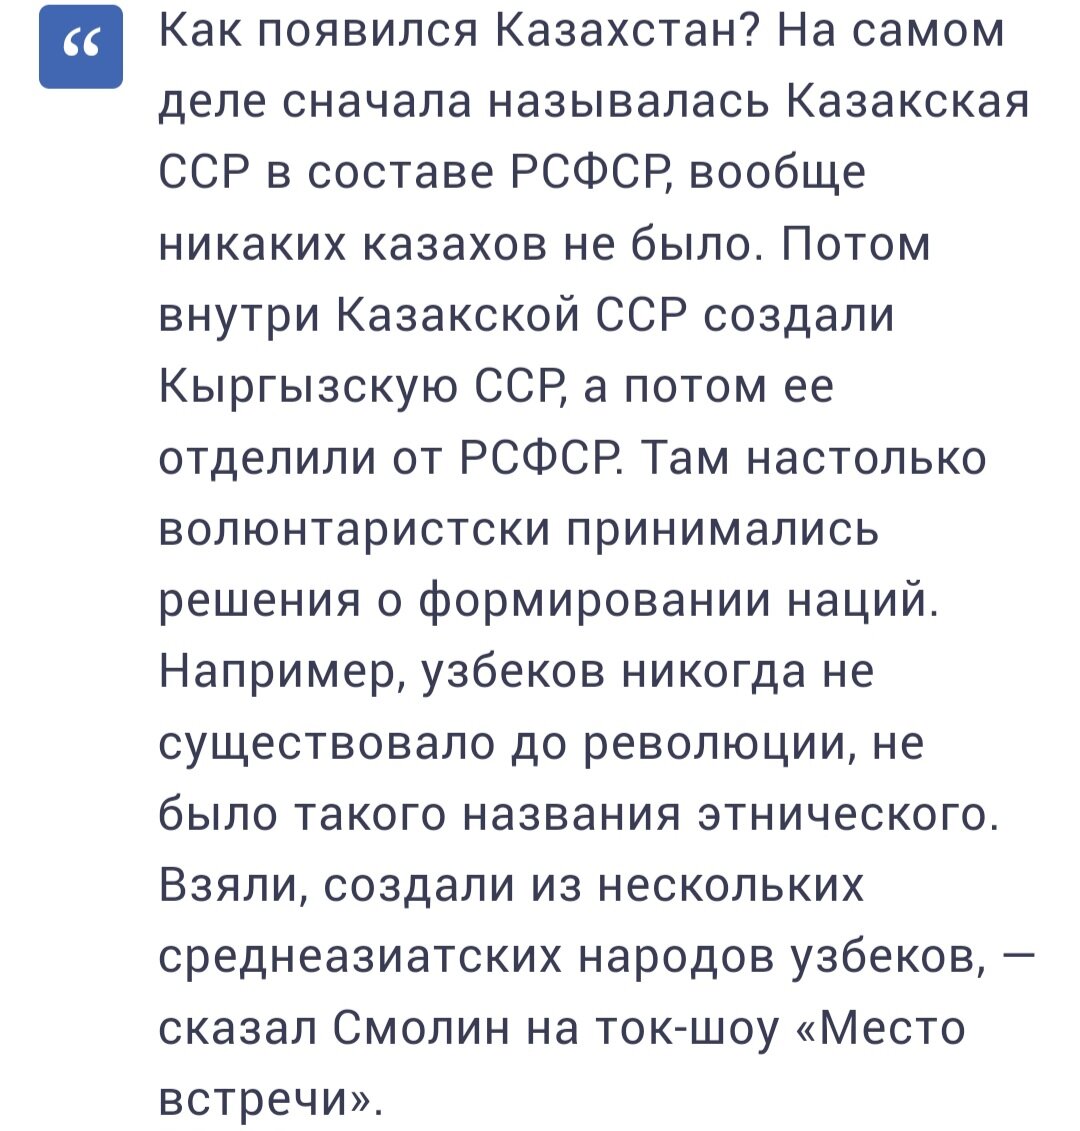 Данную новость сообщает узбекское новостное издание UPL24. Ссылку на оригинал статьи я оставлю в конце публикации.-3